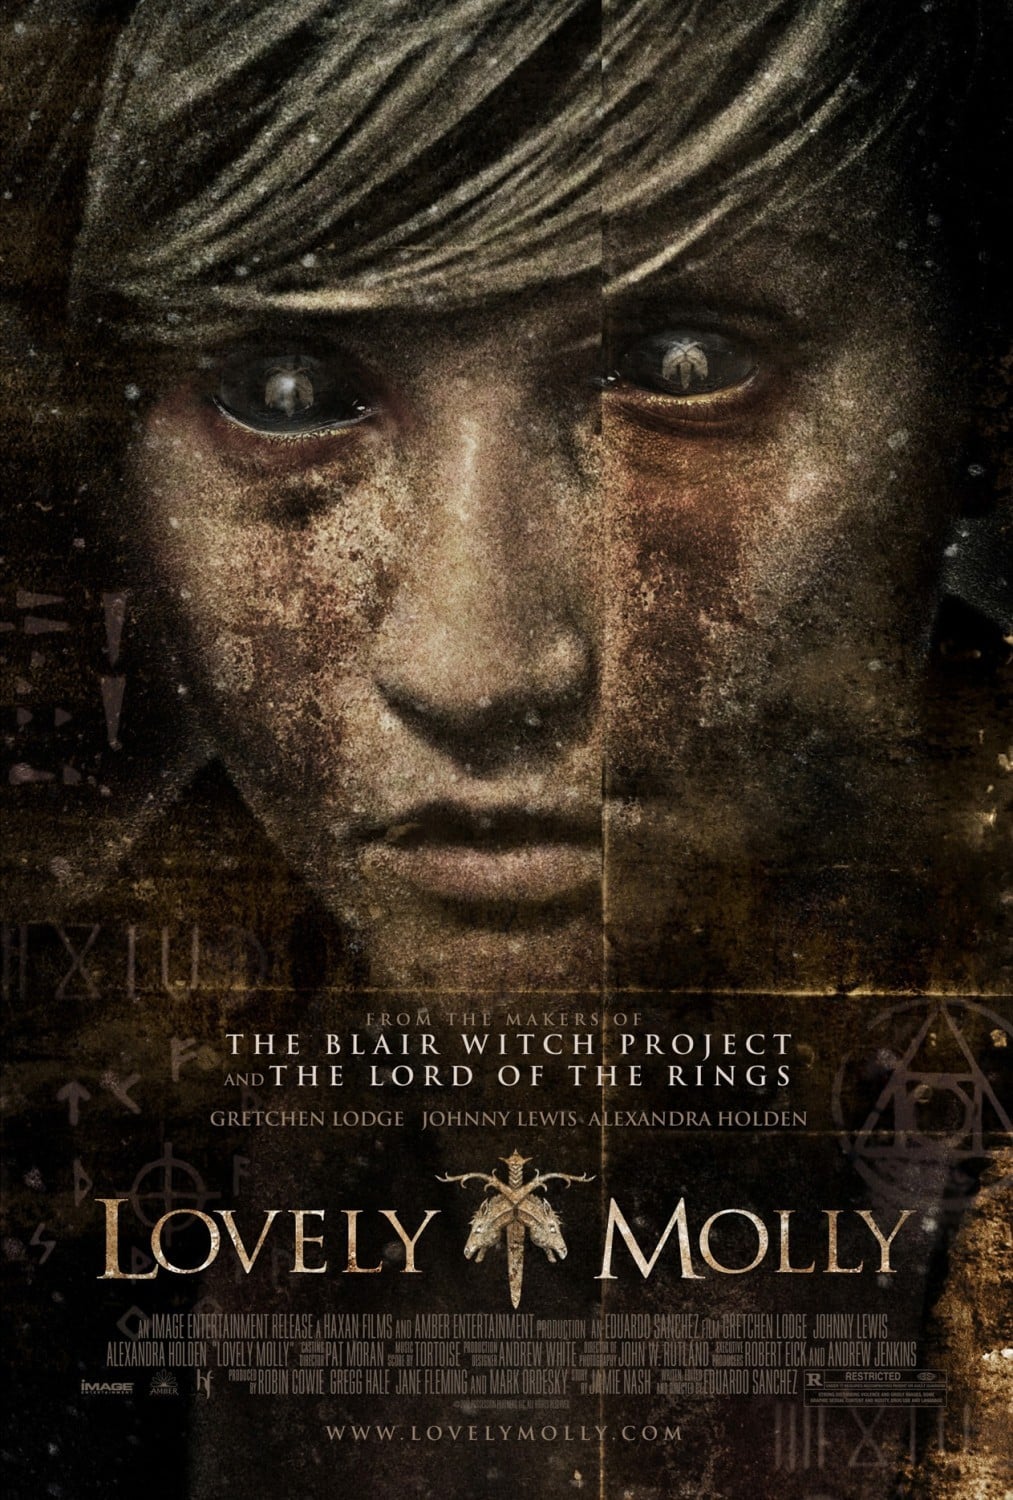 Plakat von "Lovely Molly"